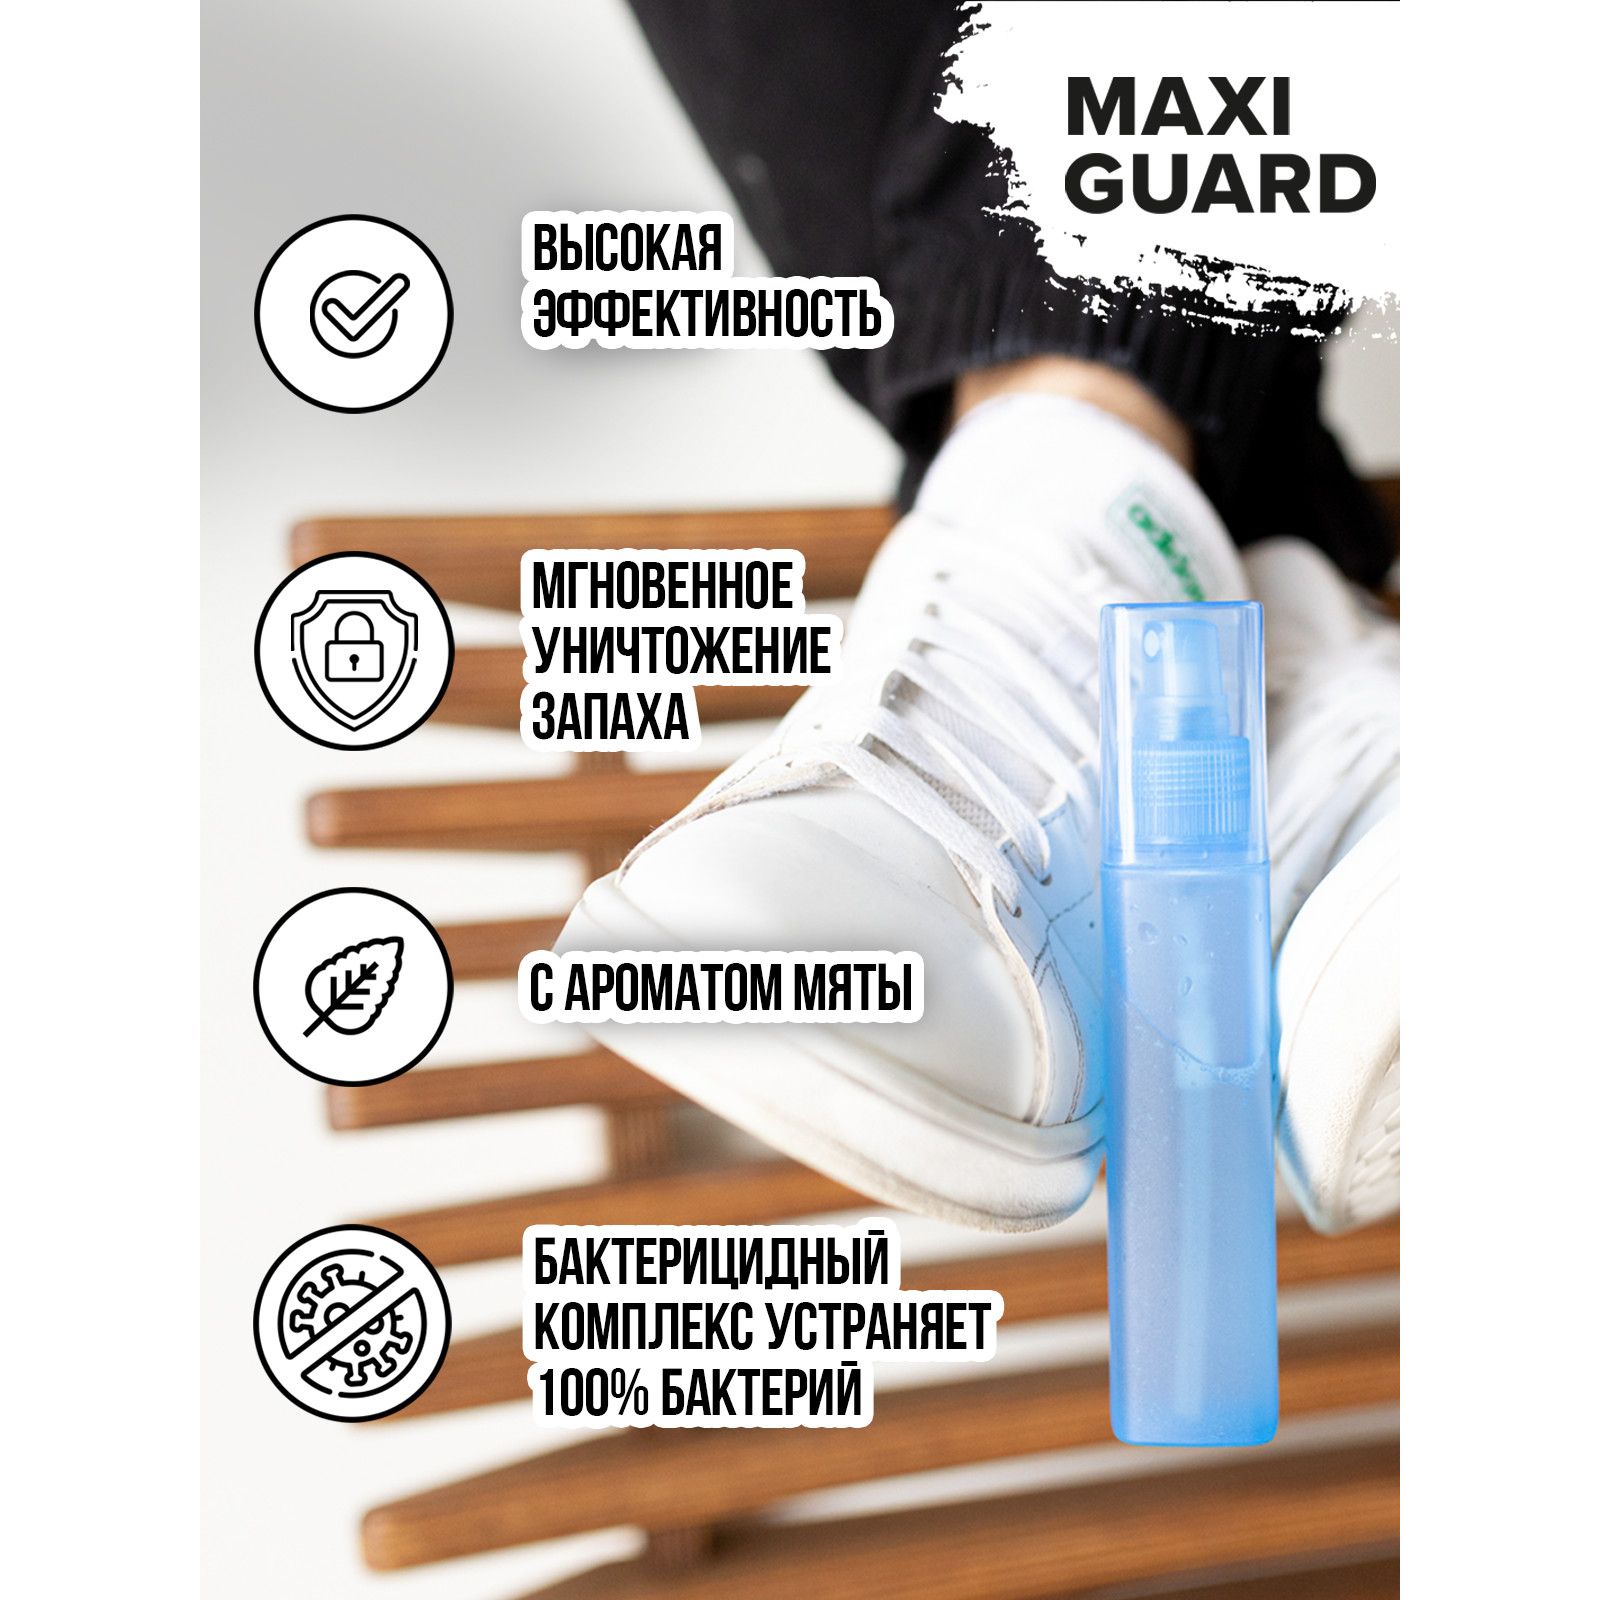 Нейтрализатор запаха в обуви Maxiguard 24337808 - фото 5